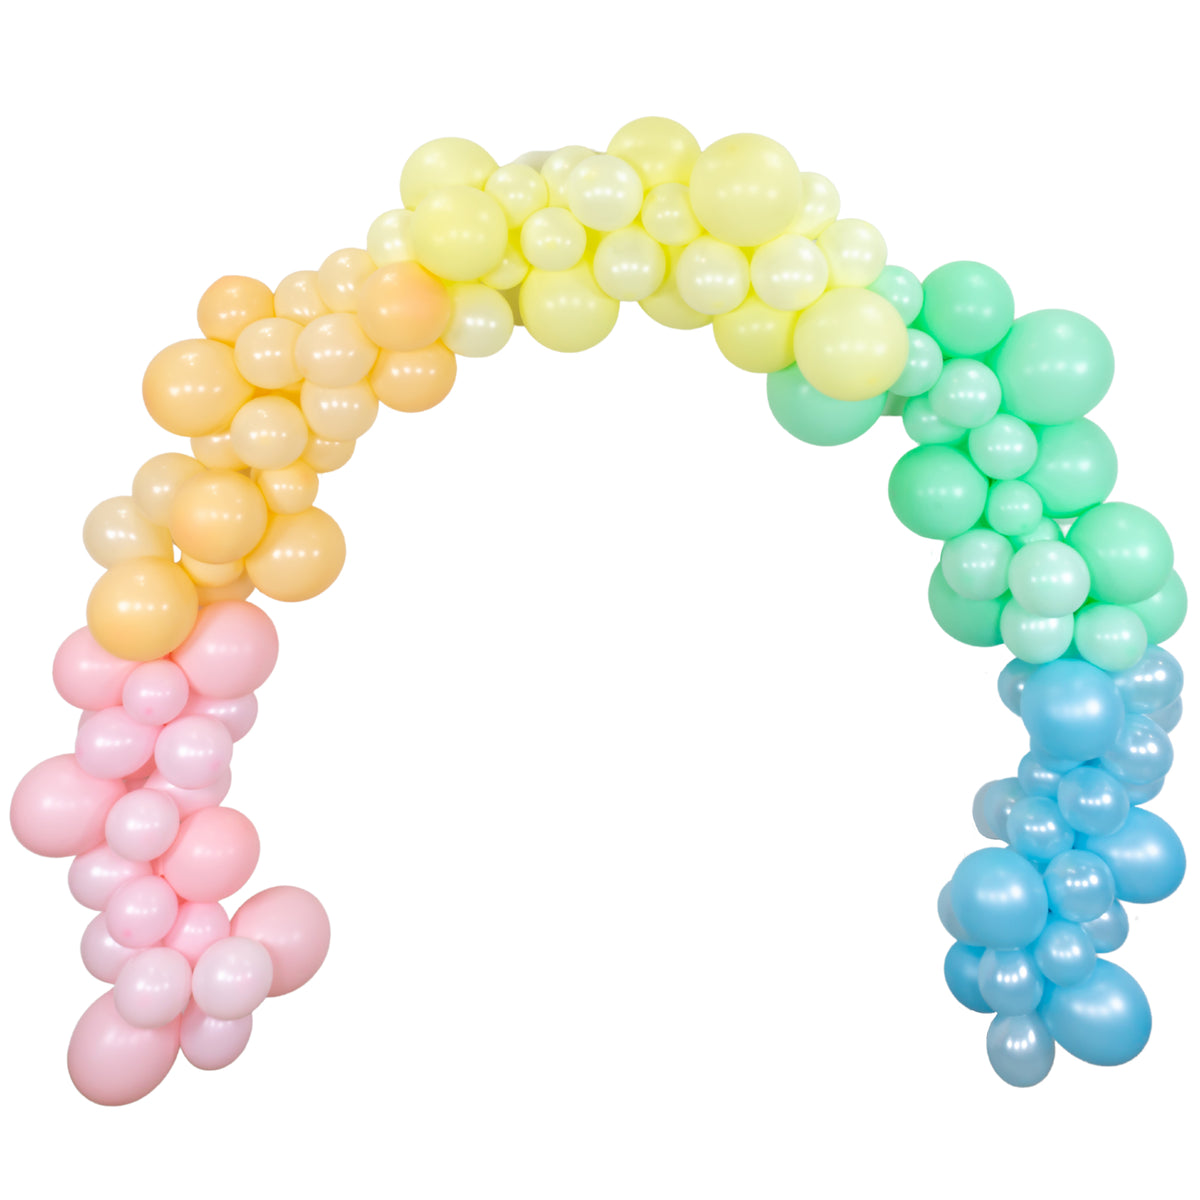 Pastel Rainbow Balloons On Mint Background Stock Photo